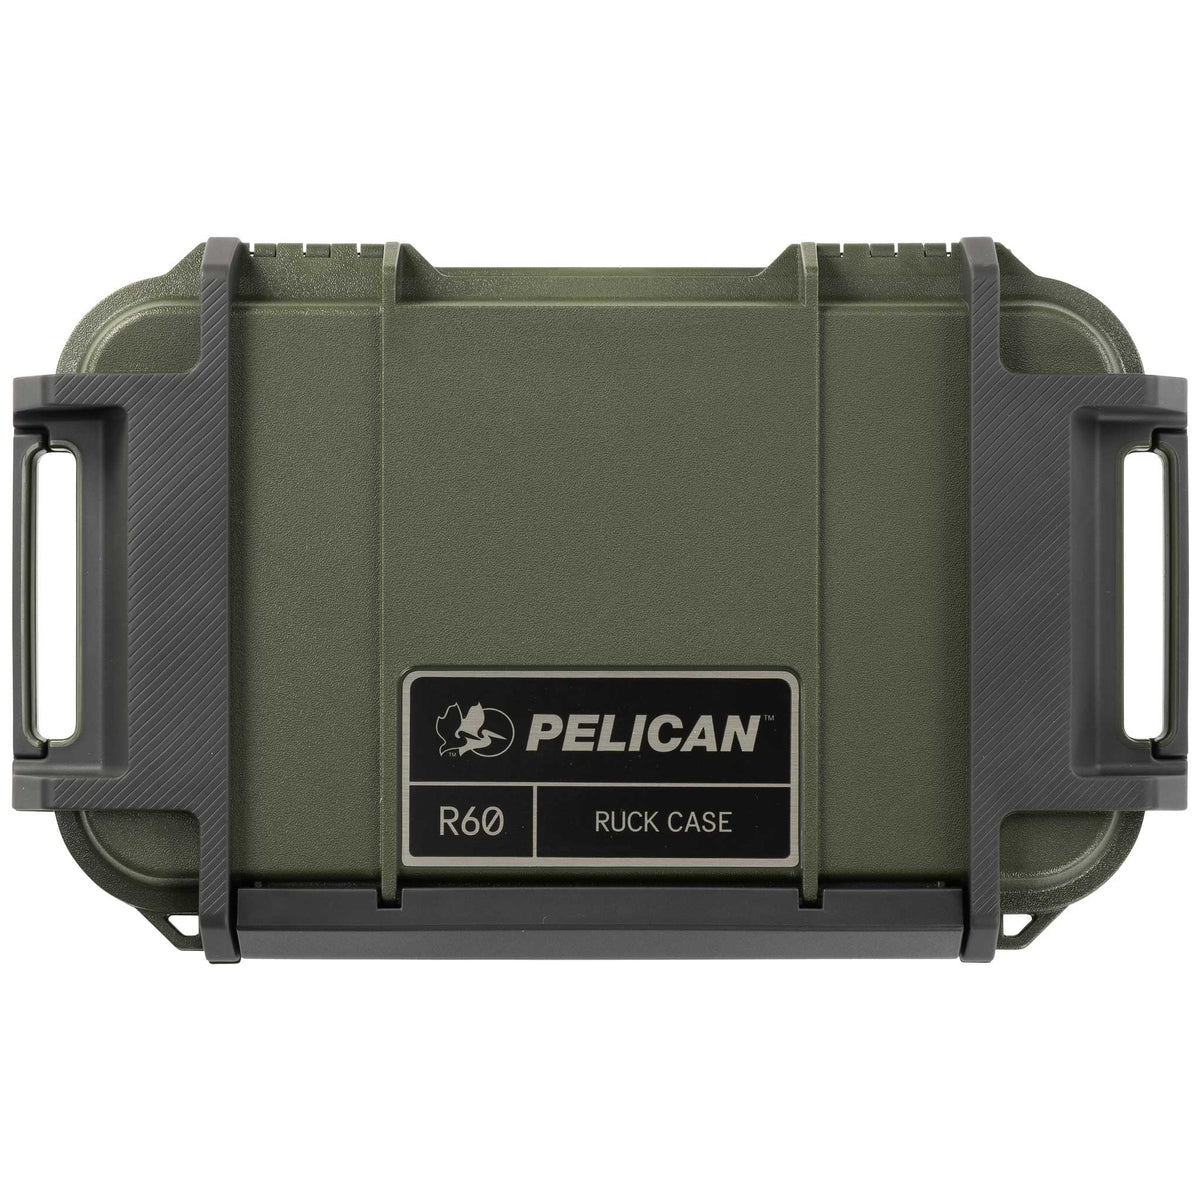 Pelican R60 waterproof ruck case OD green